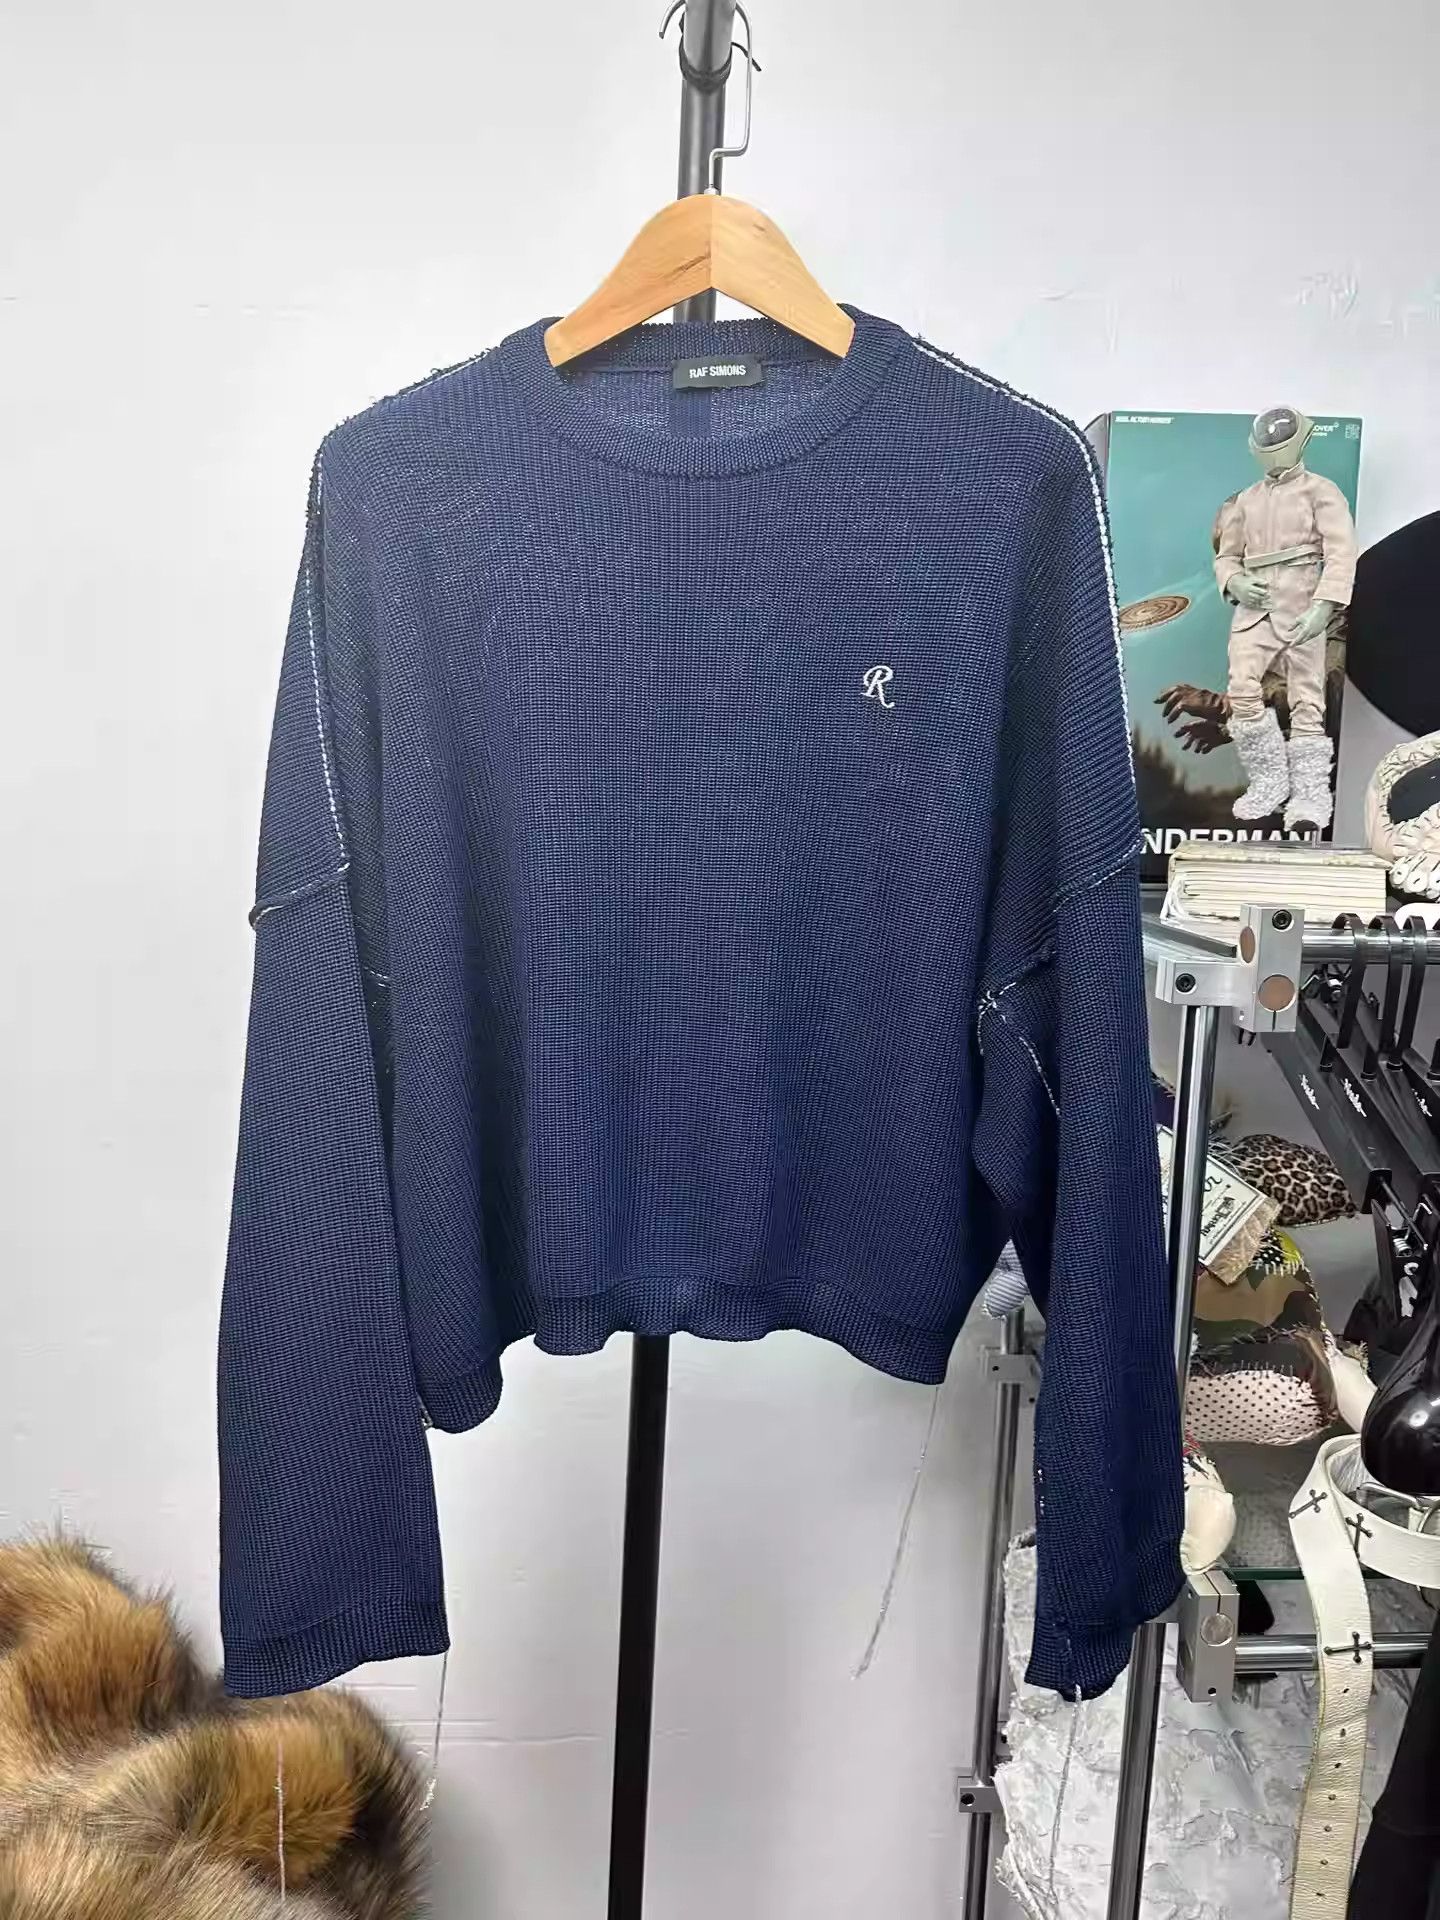 Raf Simons Raf simons 19ss short silhouette knit fringe sweater | Grailed